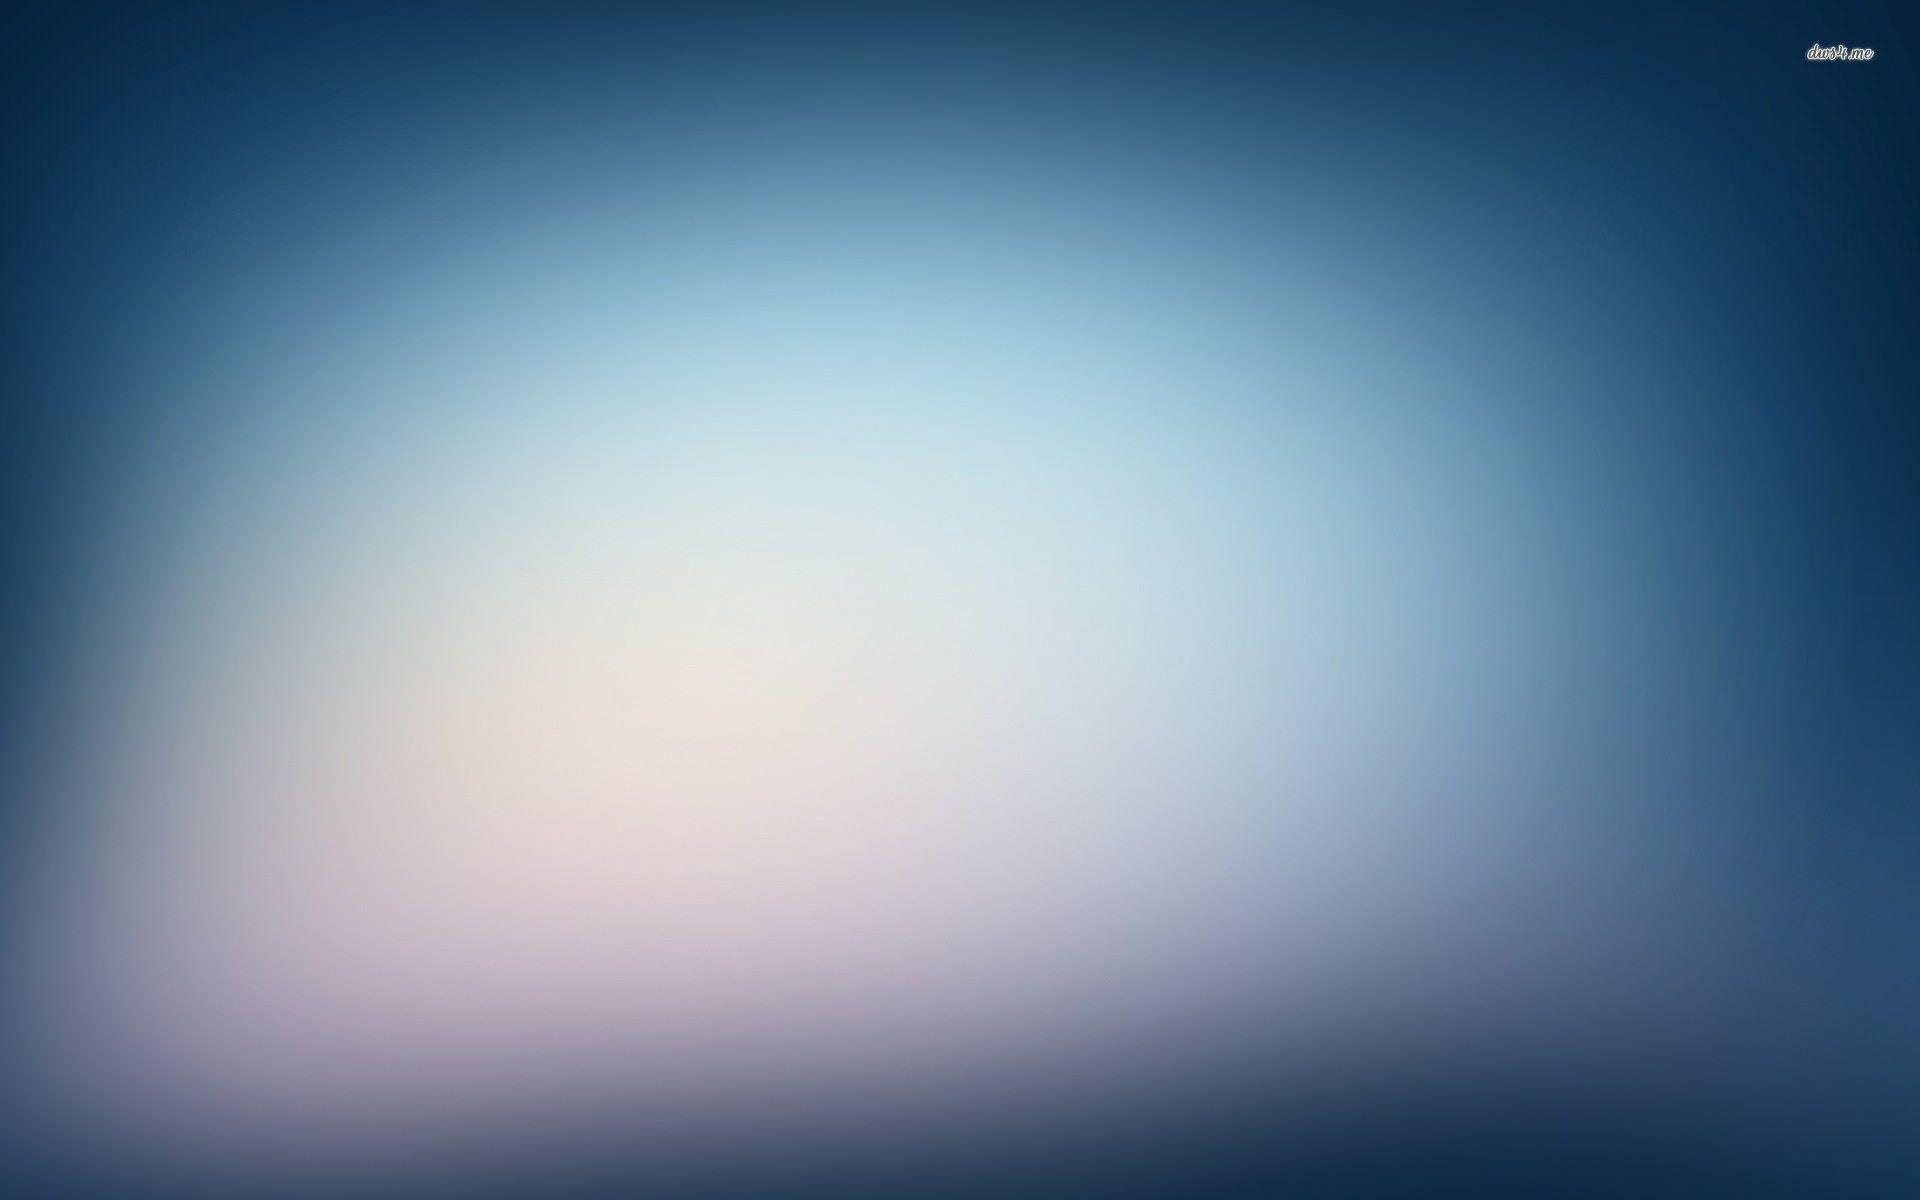 Blue Gradient Background